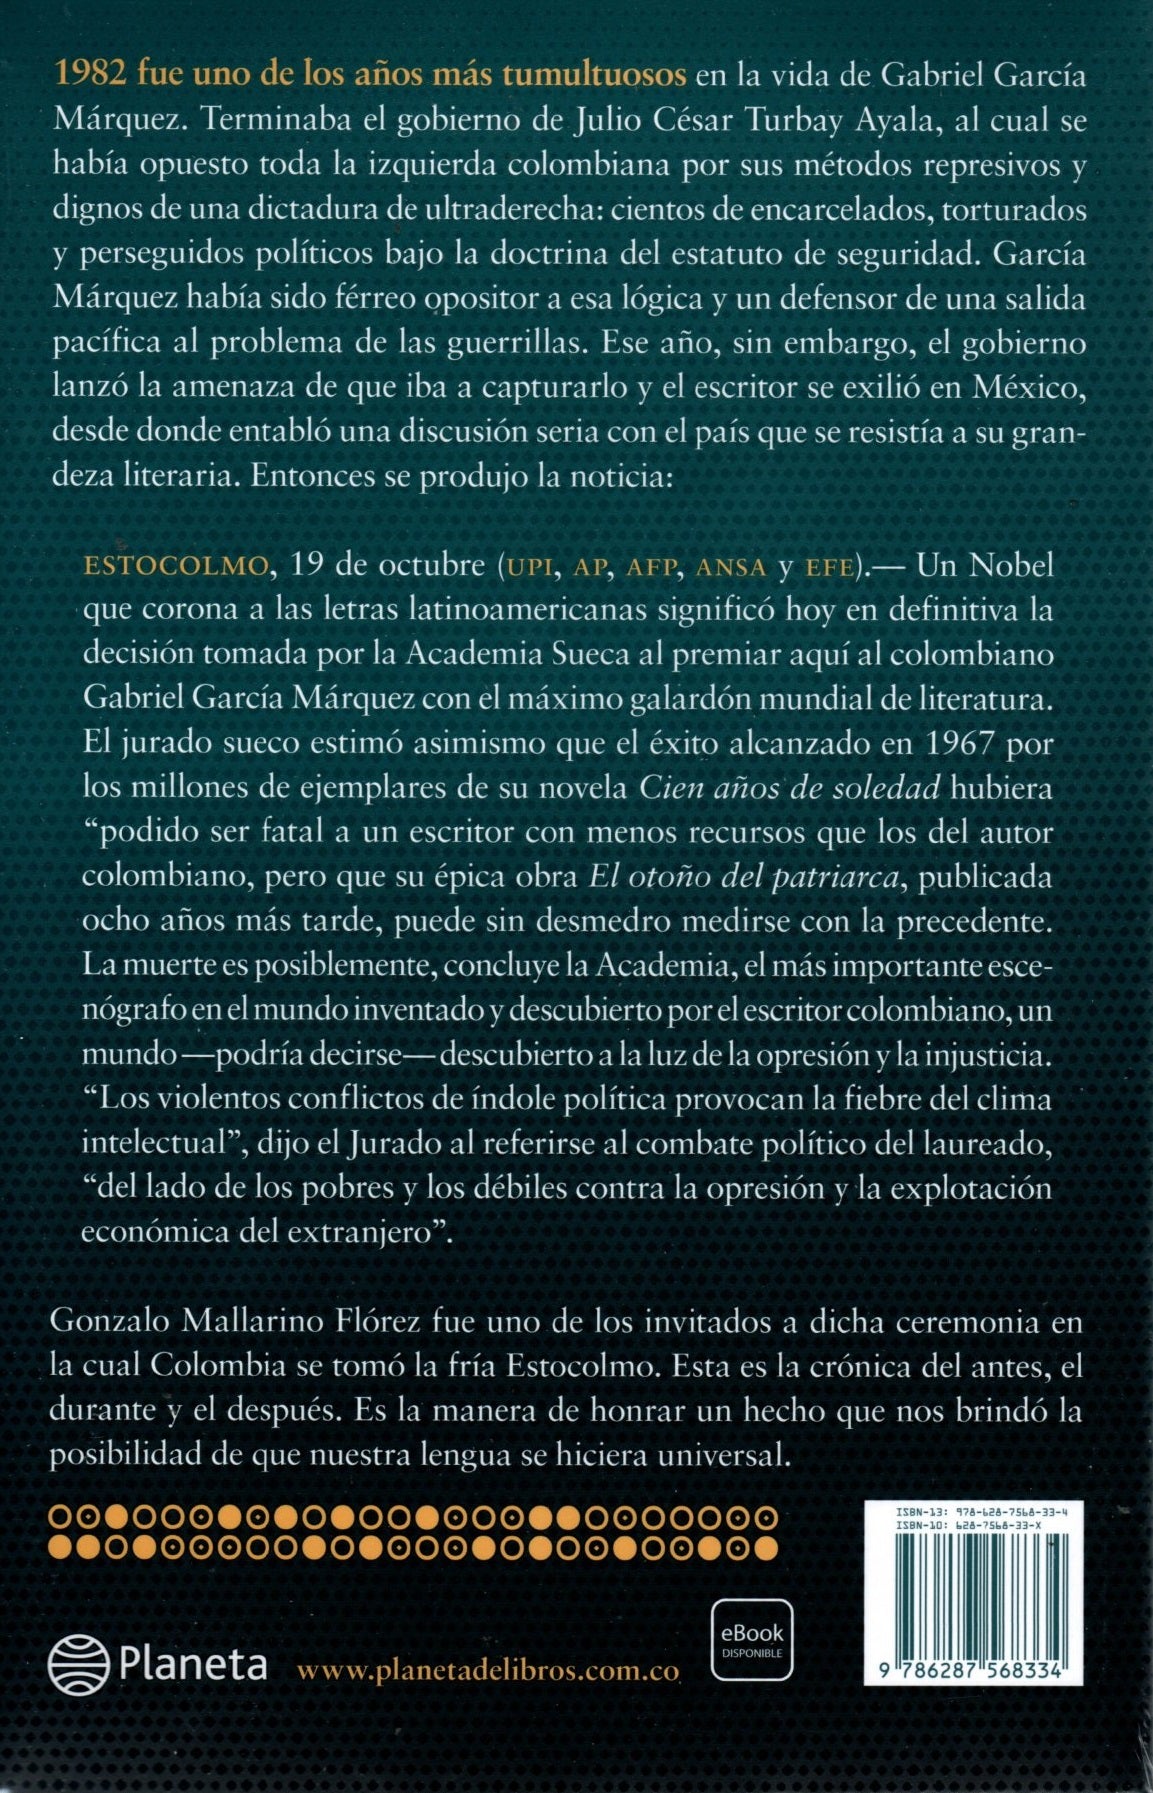 Libro Gonzalo Mallarino Flórez - El día que Gabo ganó el Nobel